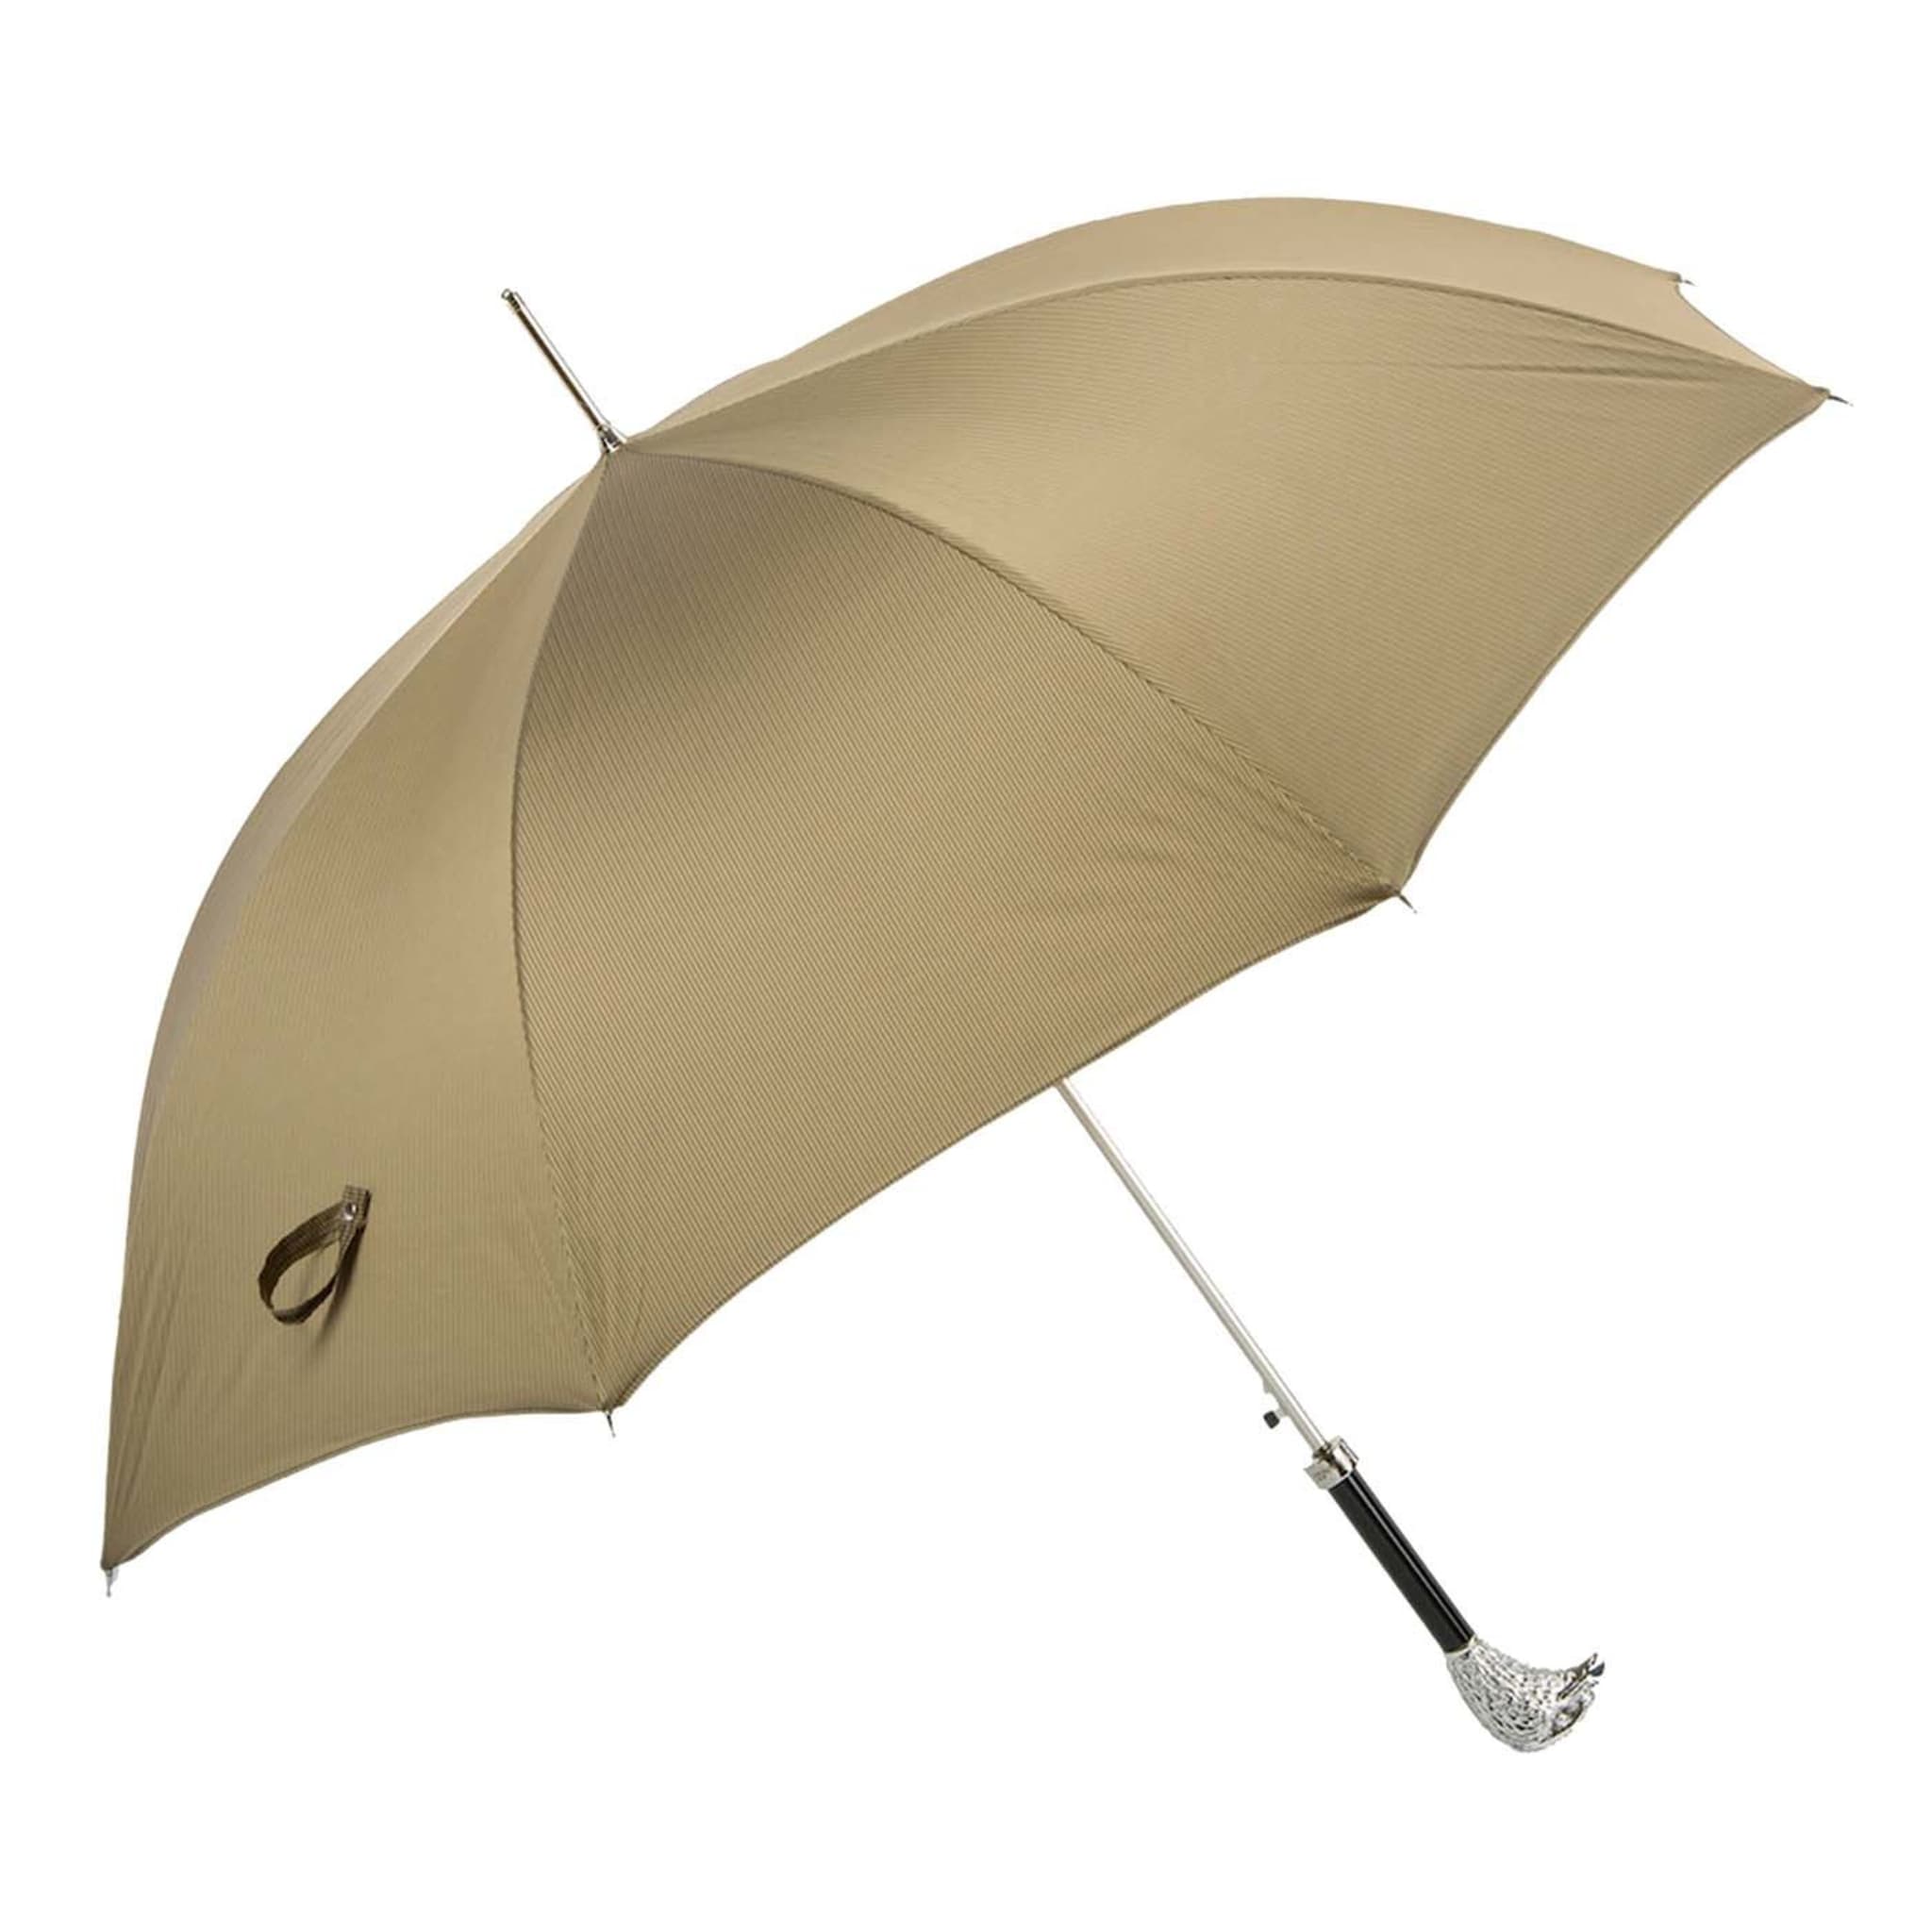 Beigefarbener Regenschirm mit silbernem Adlergriff - Hauptansicht